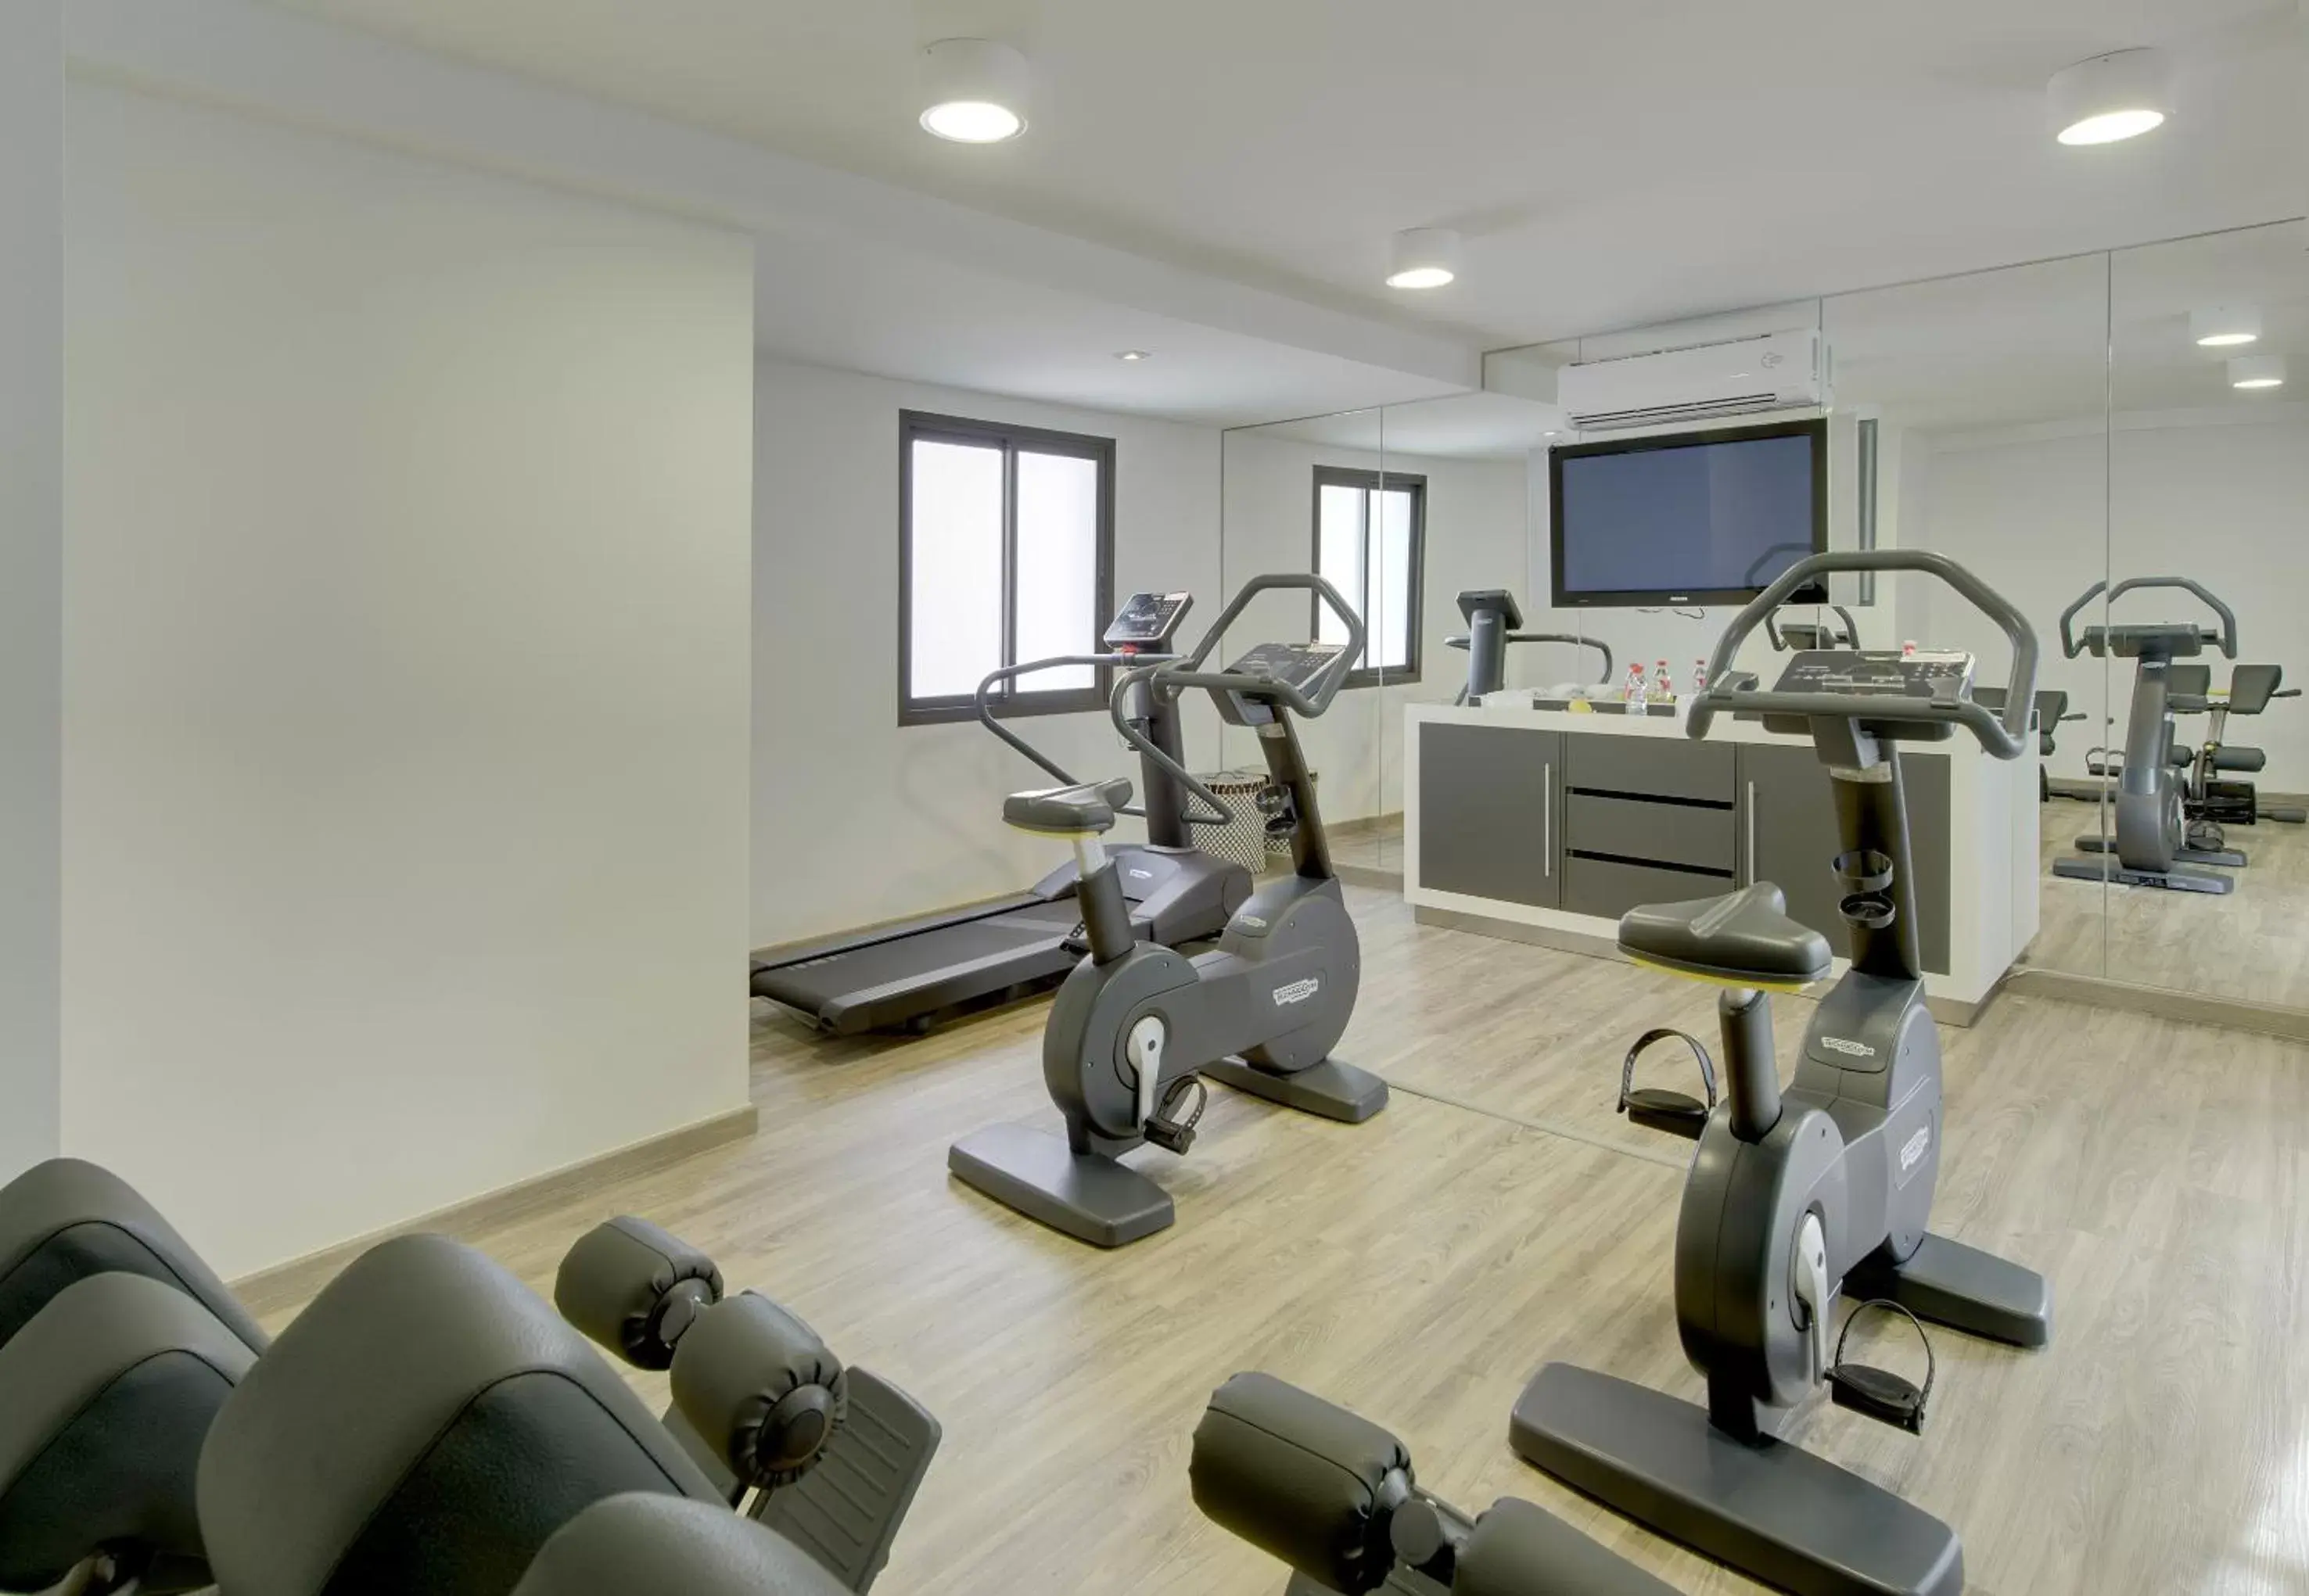 Fitness centre/facilities, Fitness Center/Facilities in Sercotel Córdoba Medina Azahara